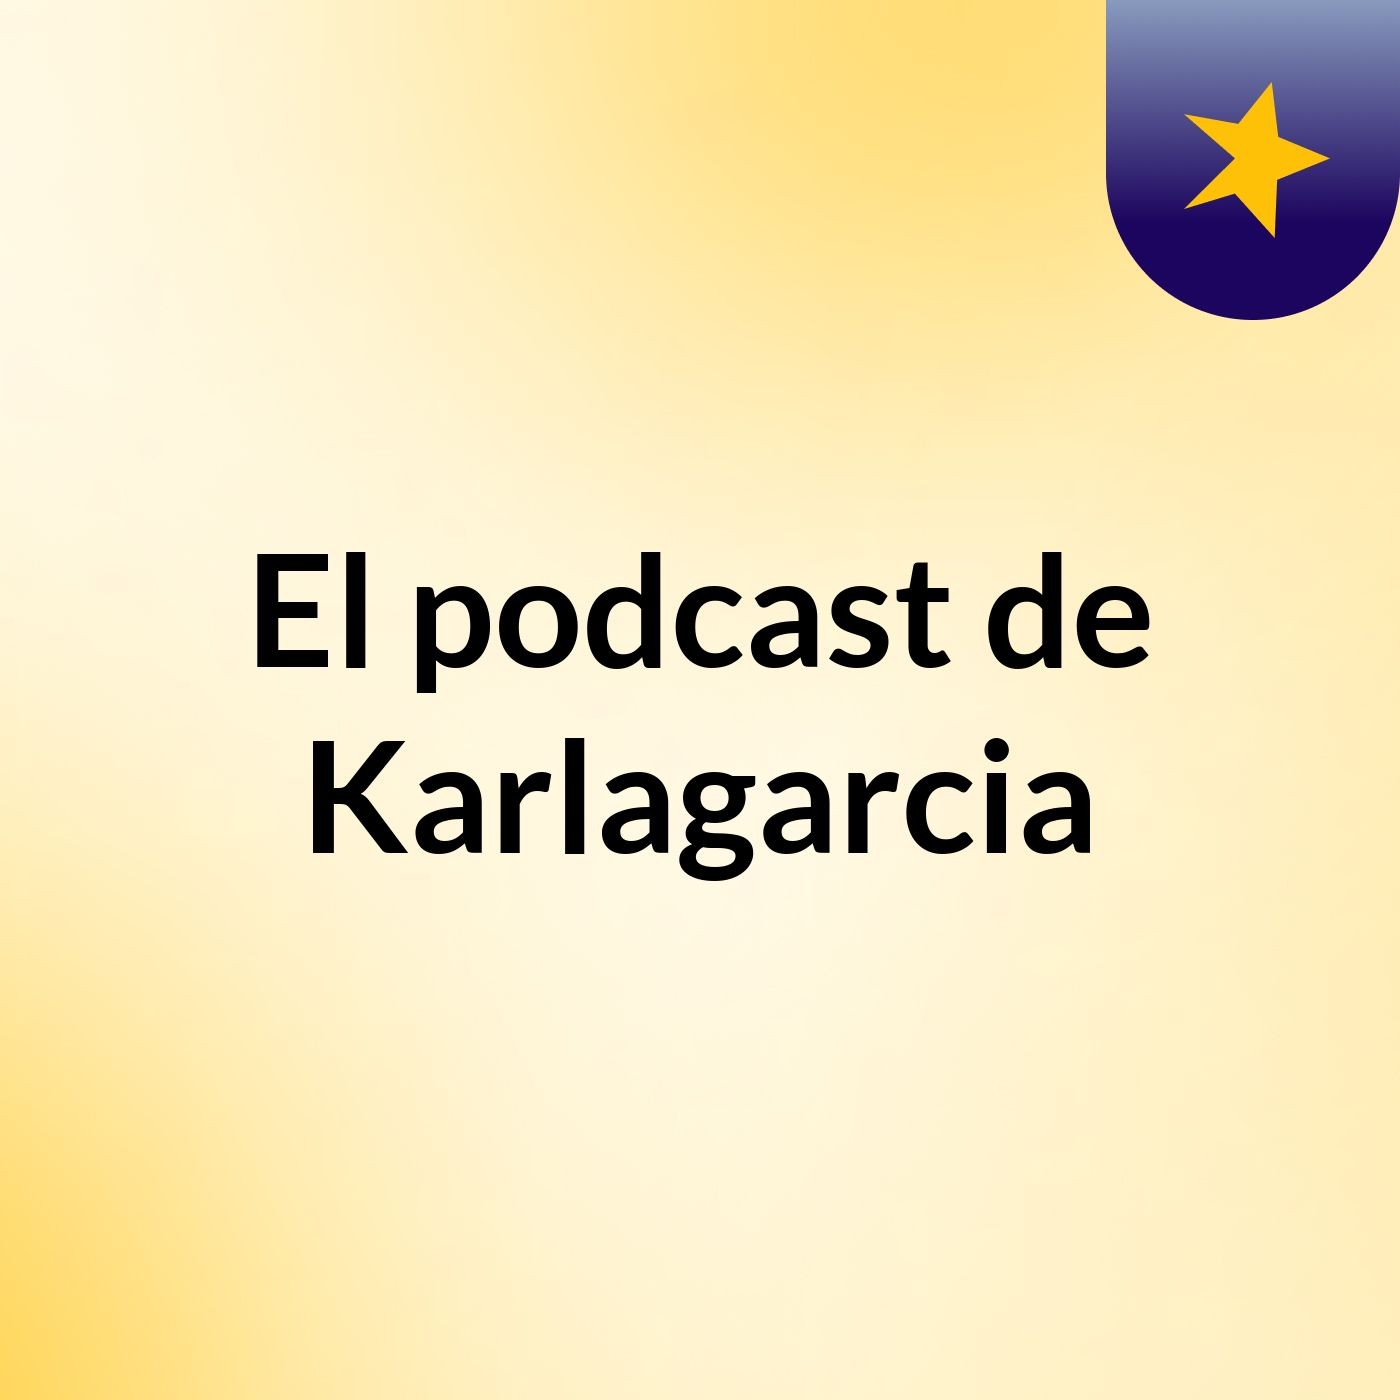 El podcast de Karlagarcia